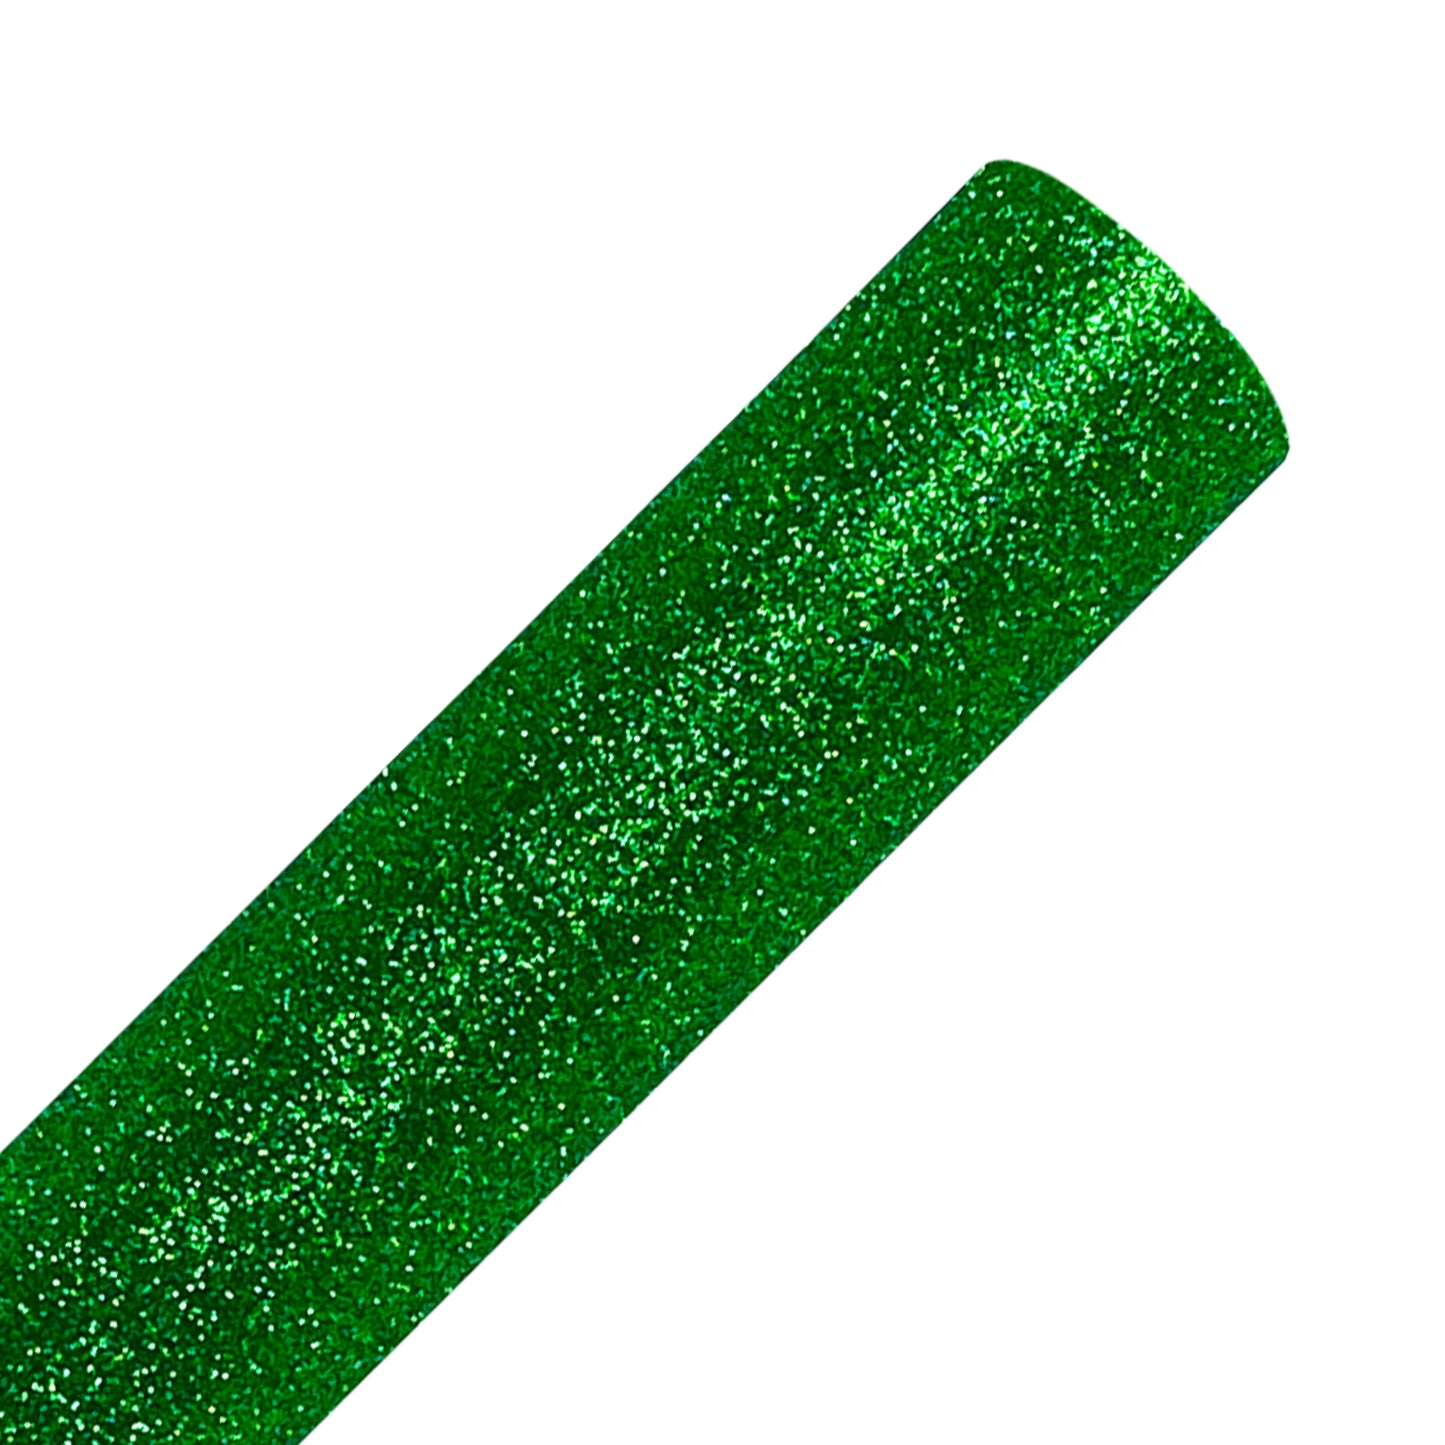 Green Glitter Heat Transfer Vinyl Rolls By Craftables